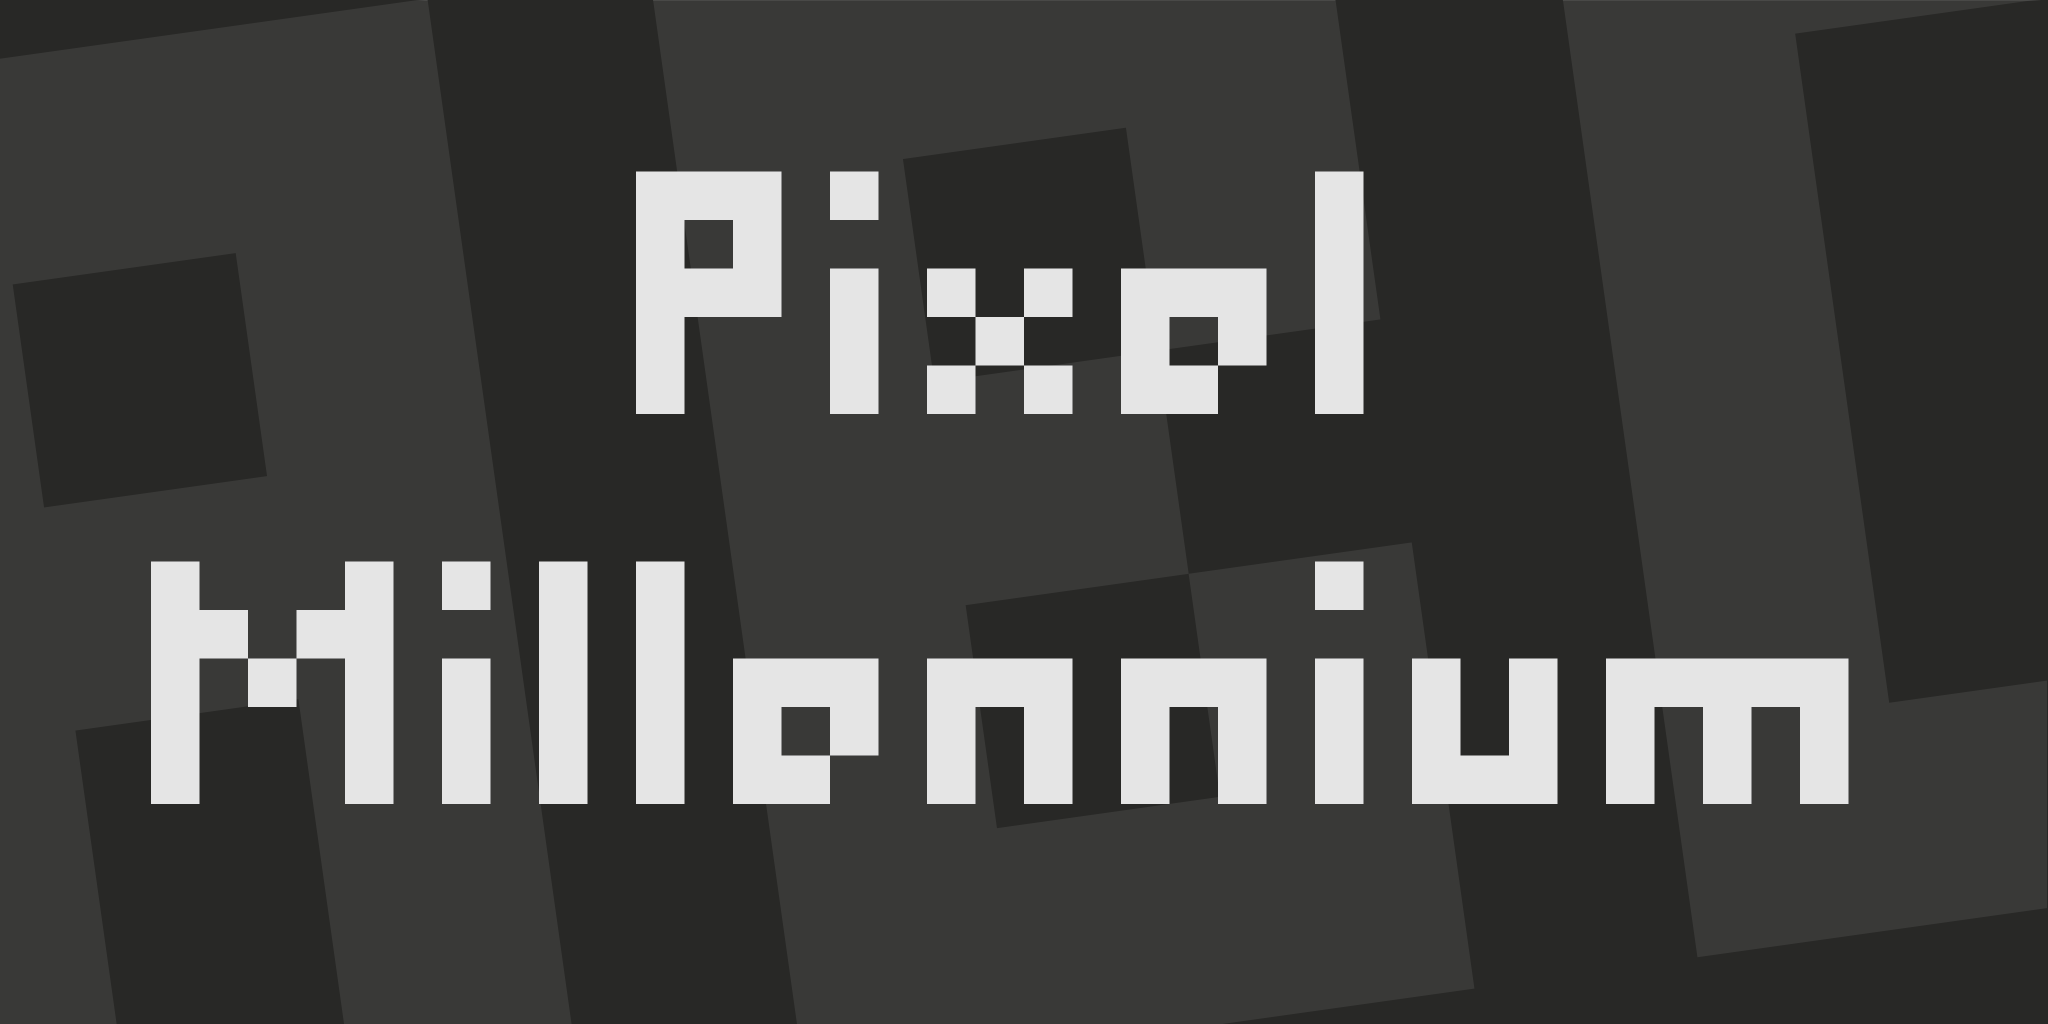 Pixel Millennium